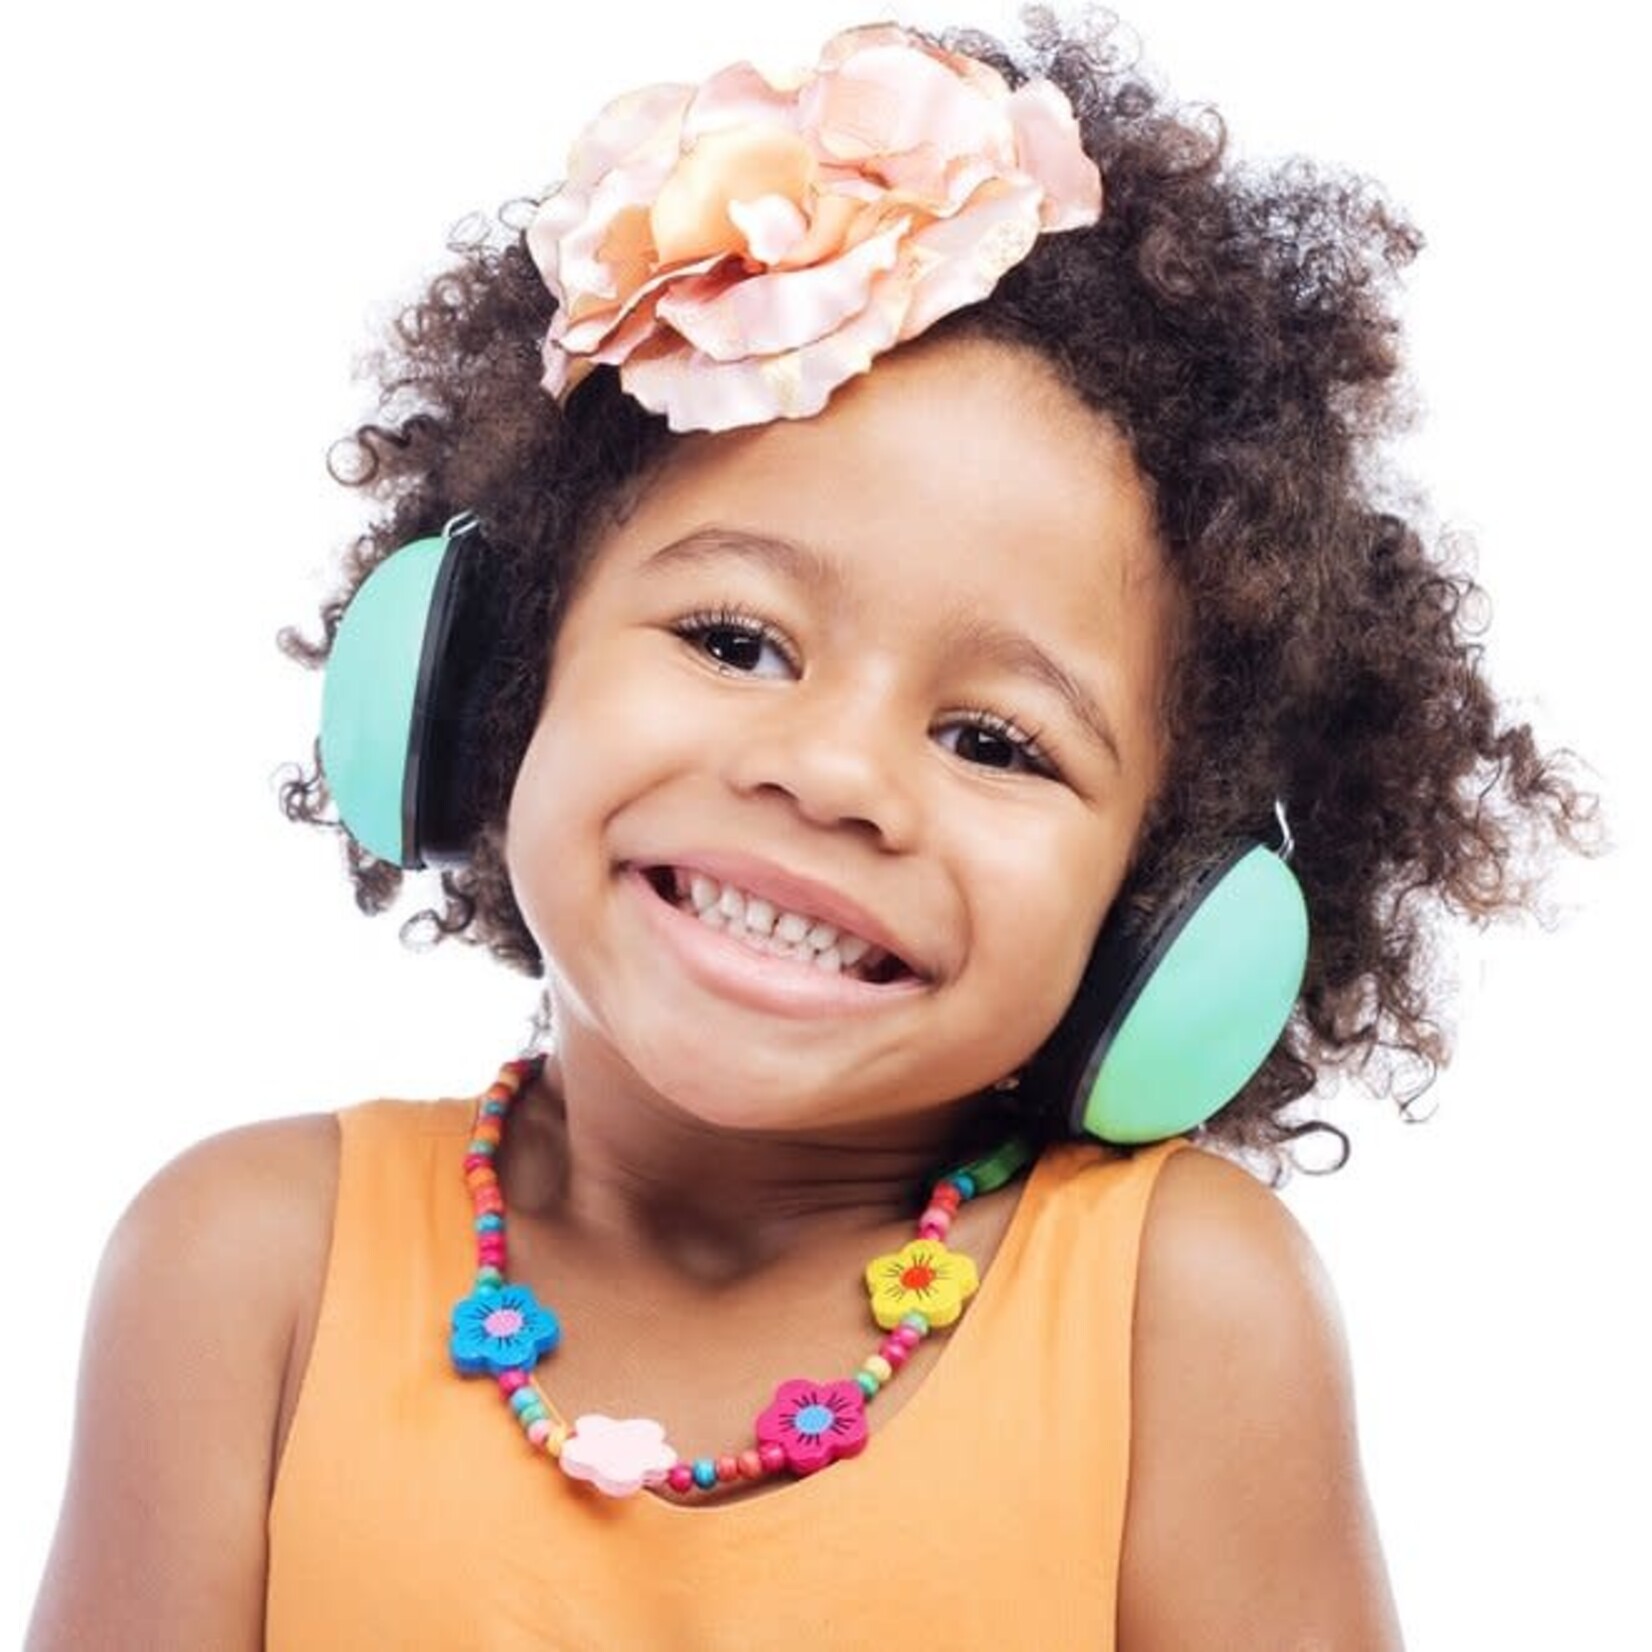 Alecto Casque anti-bruit protection oreilles enfant